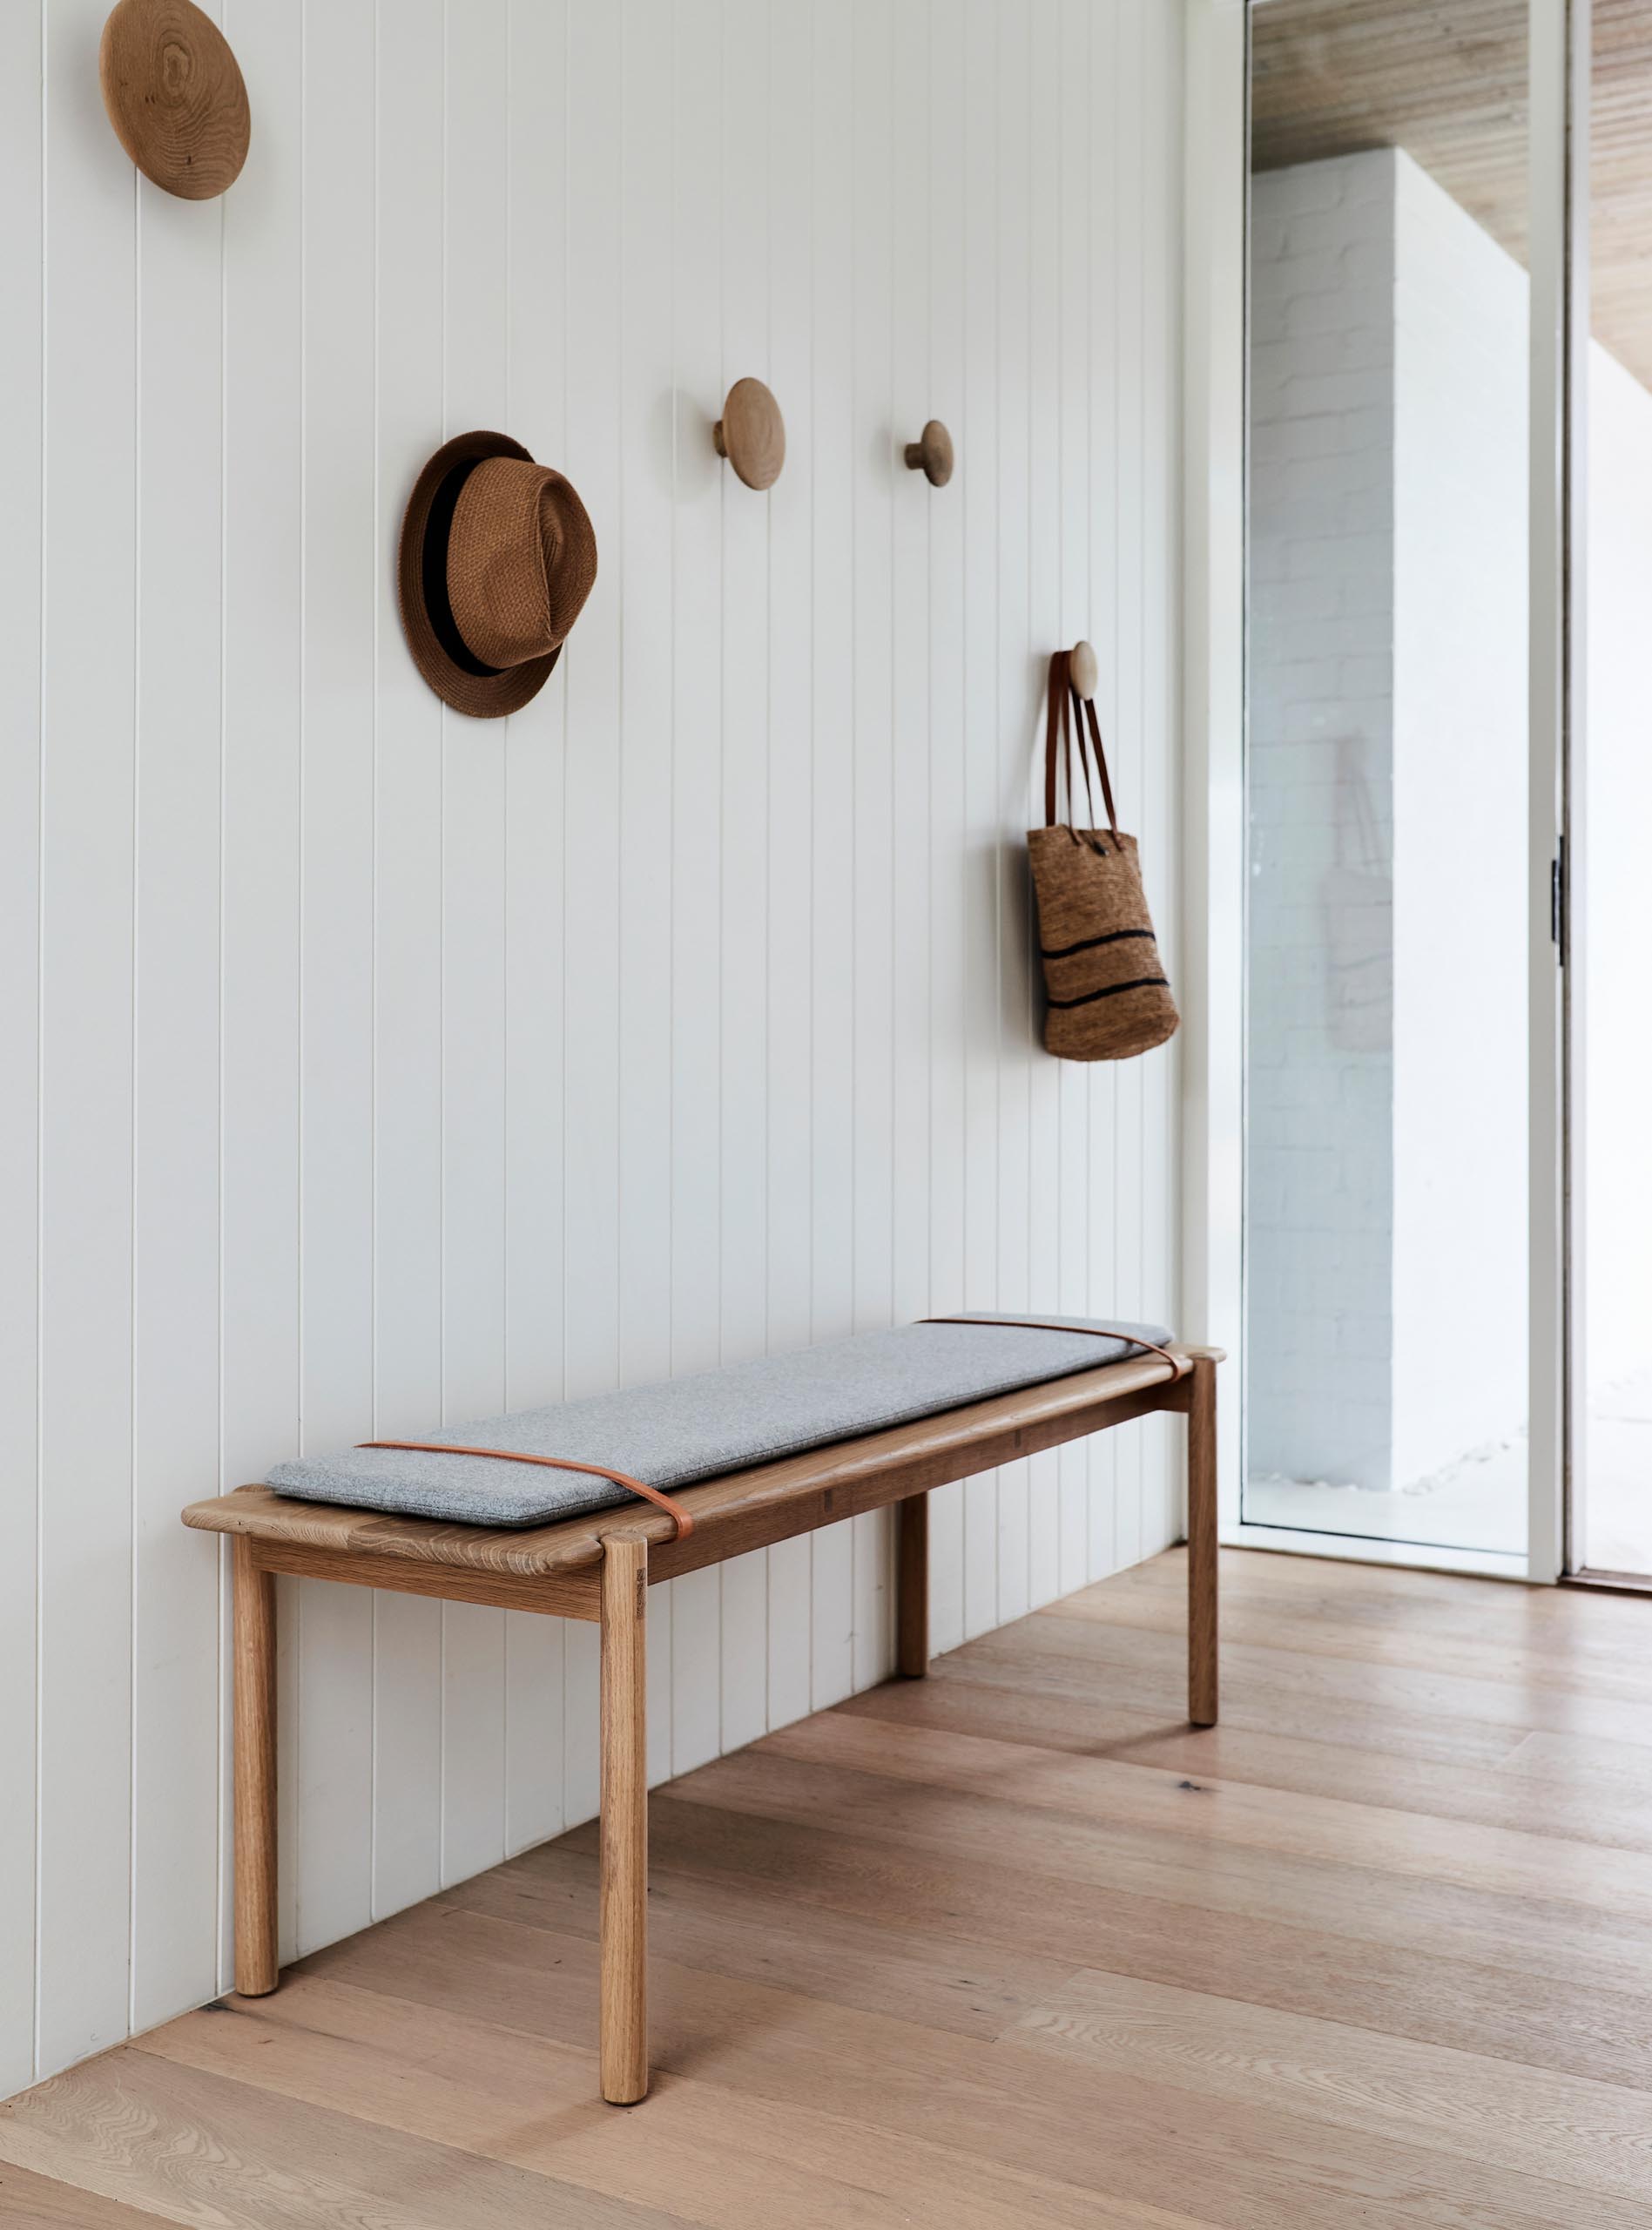 У этой современной прихожей белая стена, дубовый пол, простая скамья и круглые деревянные крючки на стенах.